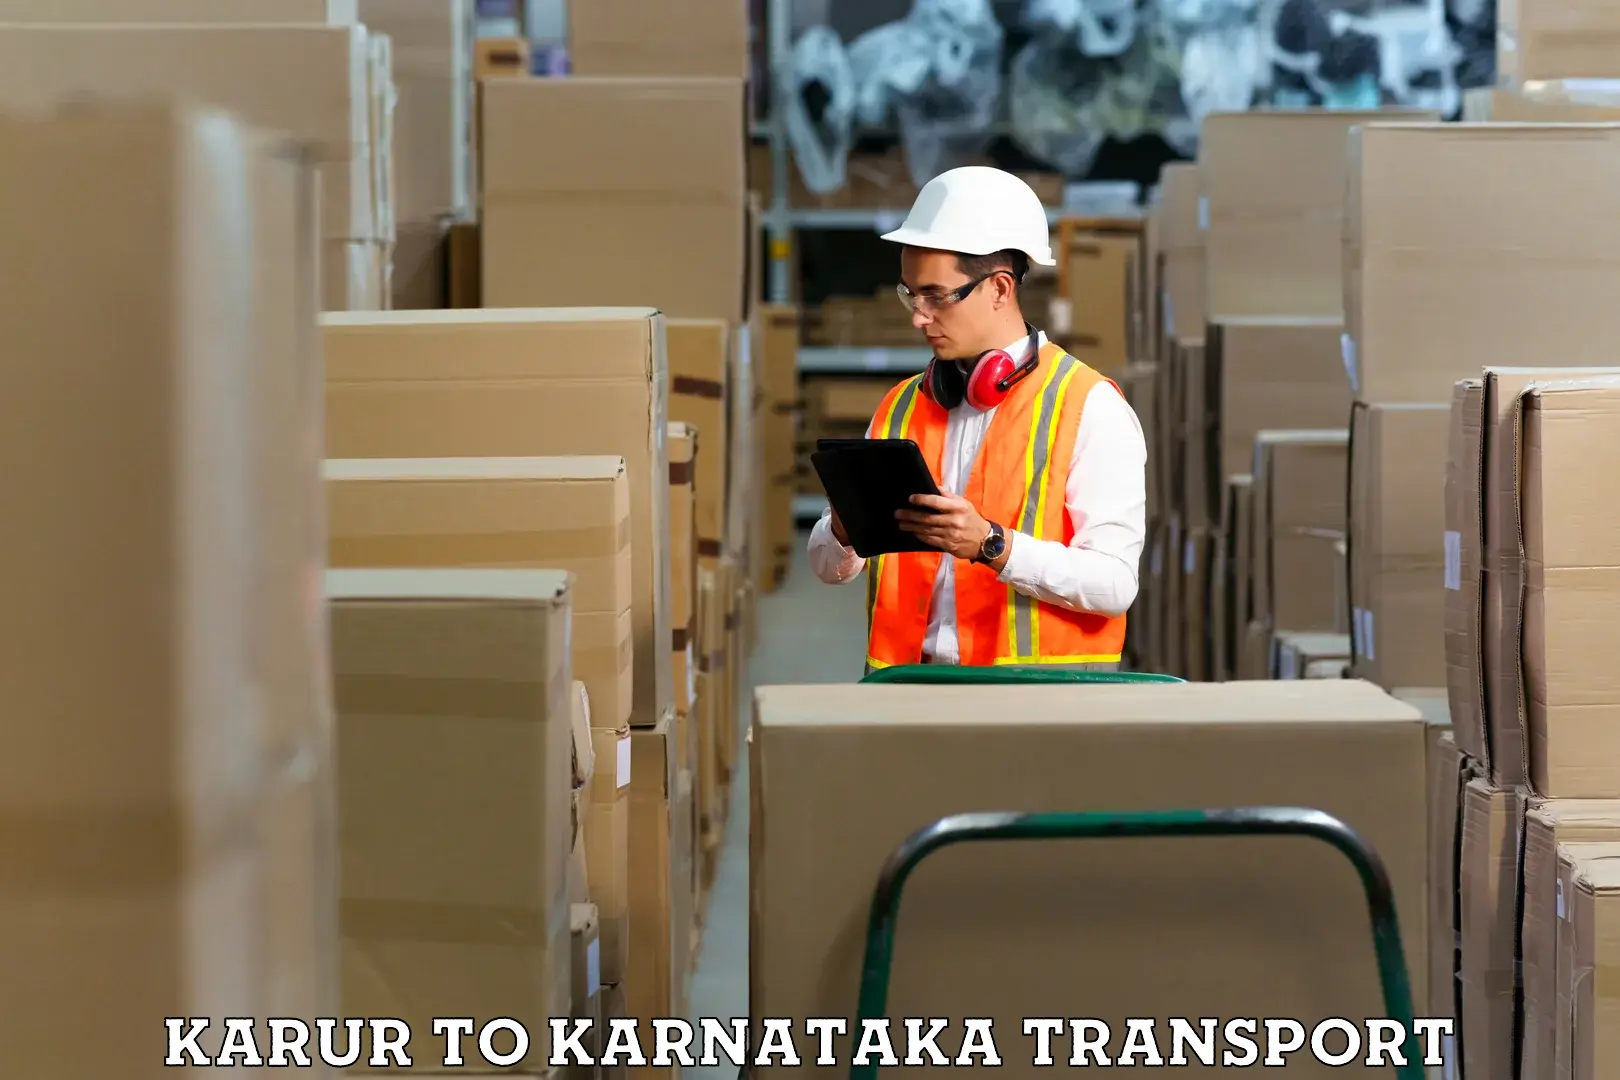 Furniture transport service Karur to Bidar